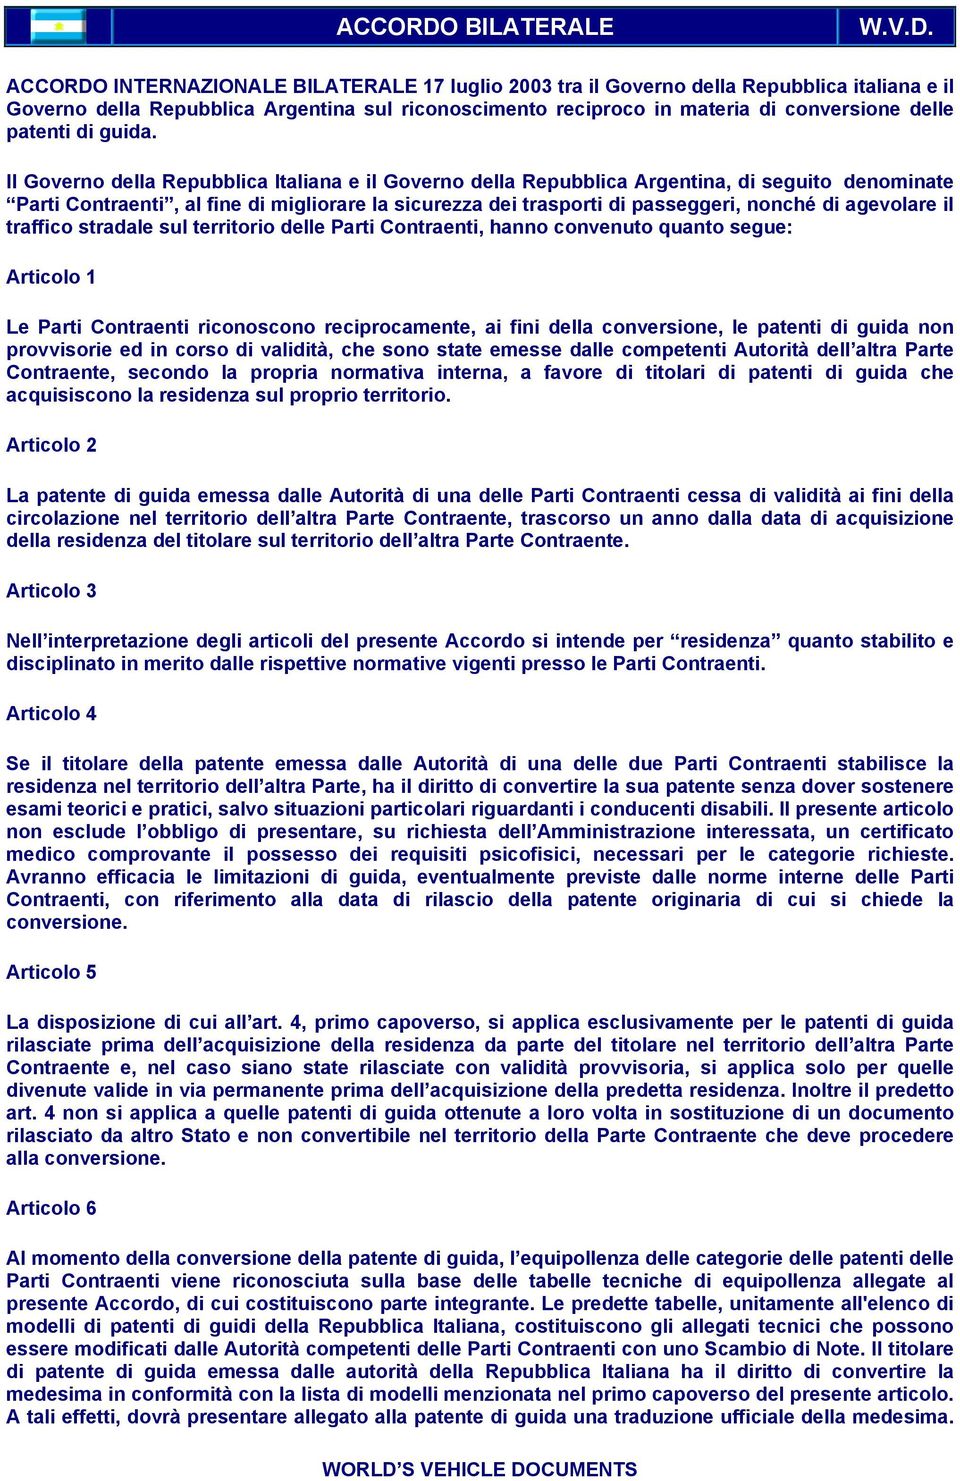 INTERNAZIONALE BILATERALE 17 luglio 2003 tra il Governo della Repubblica italiana e il Governo della Repubblica Argentina sul riconoscimento reciproco in materia di conversione delle patenti di guida.